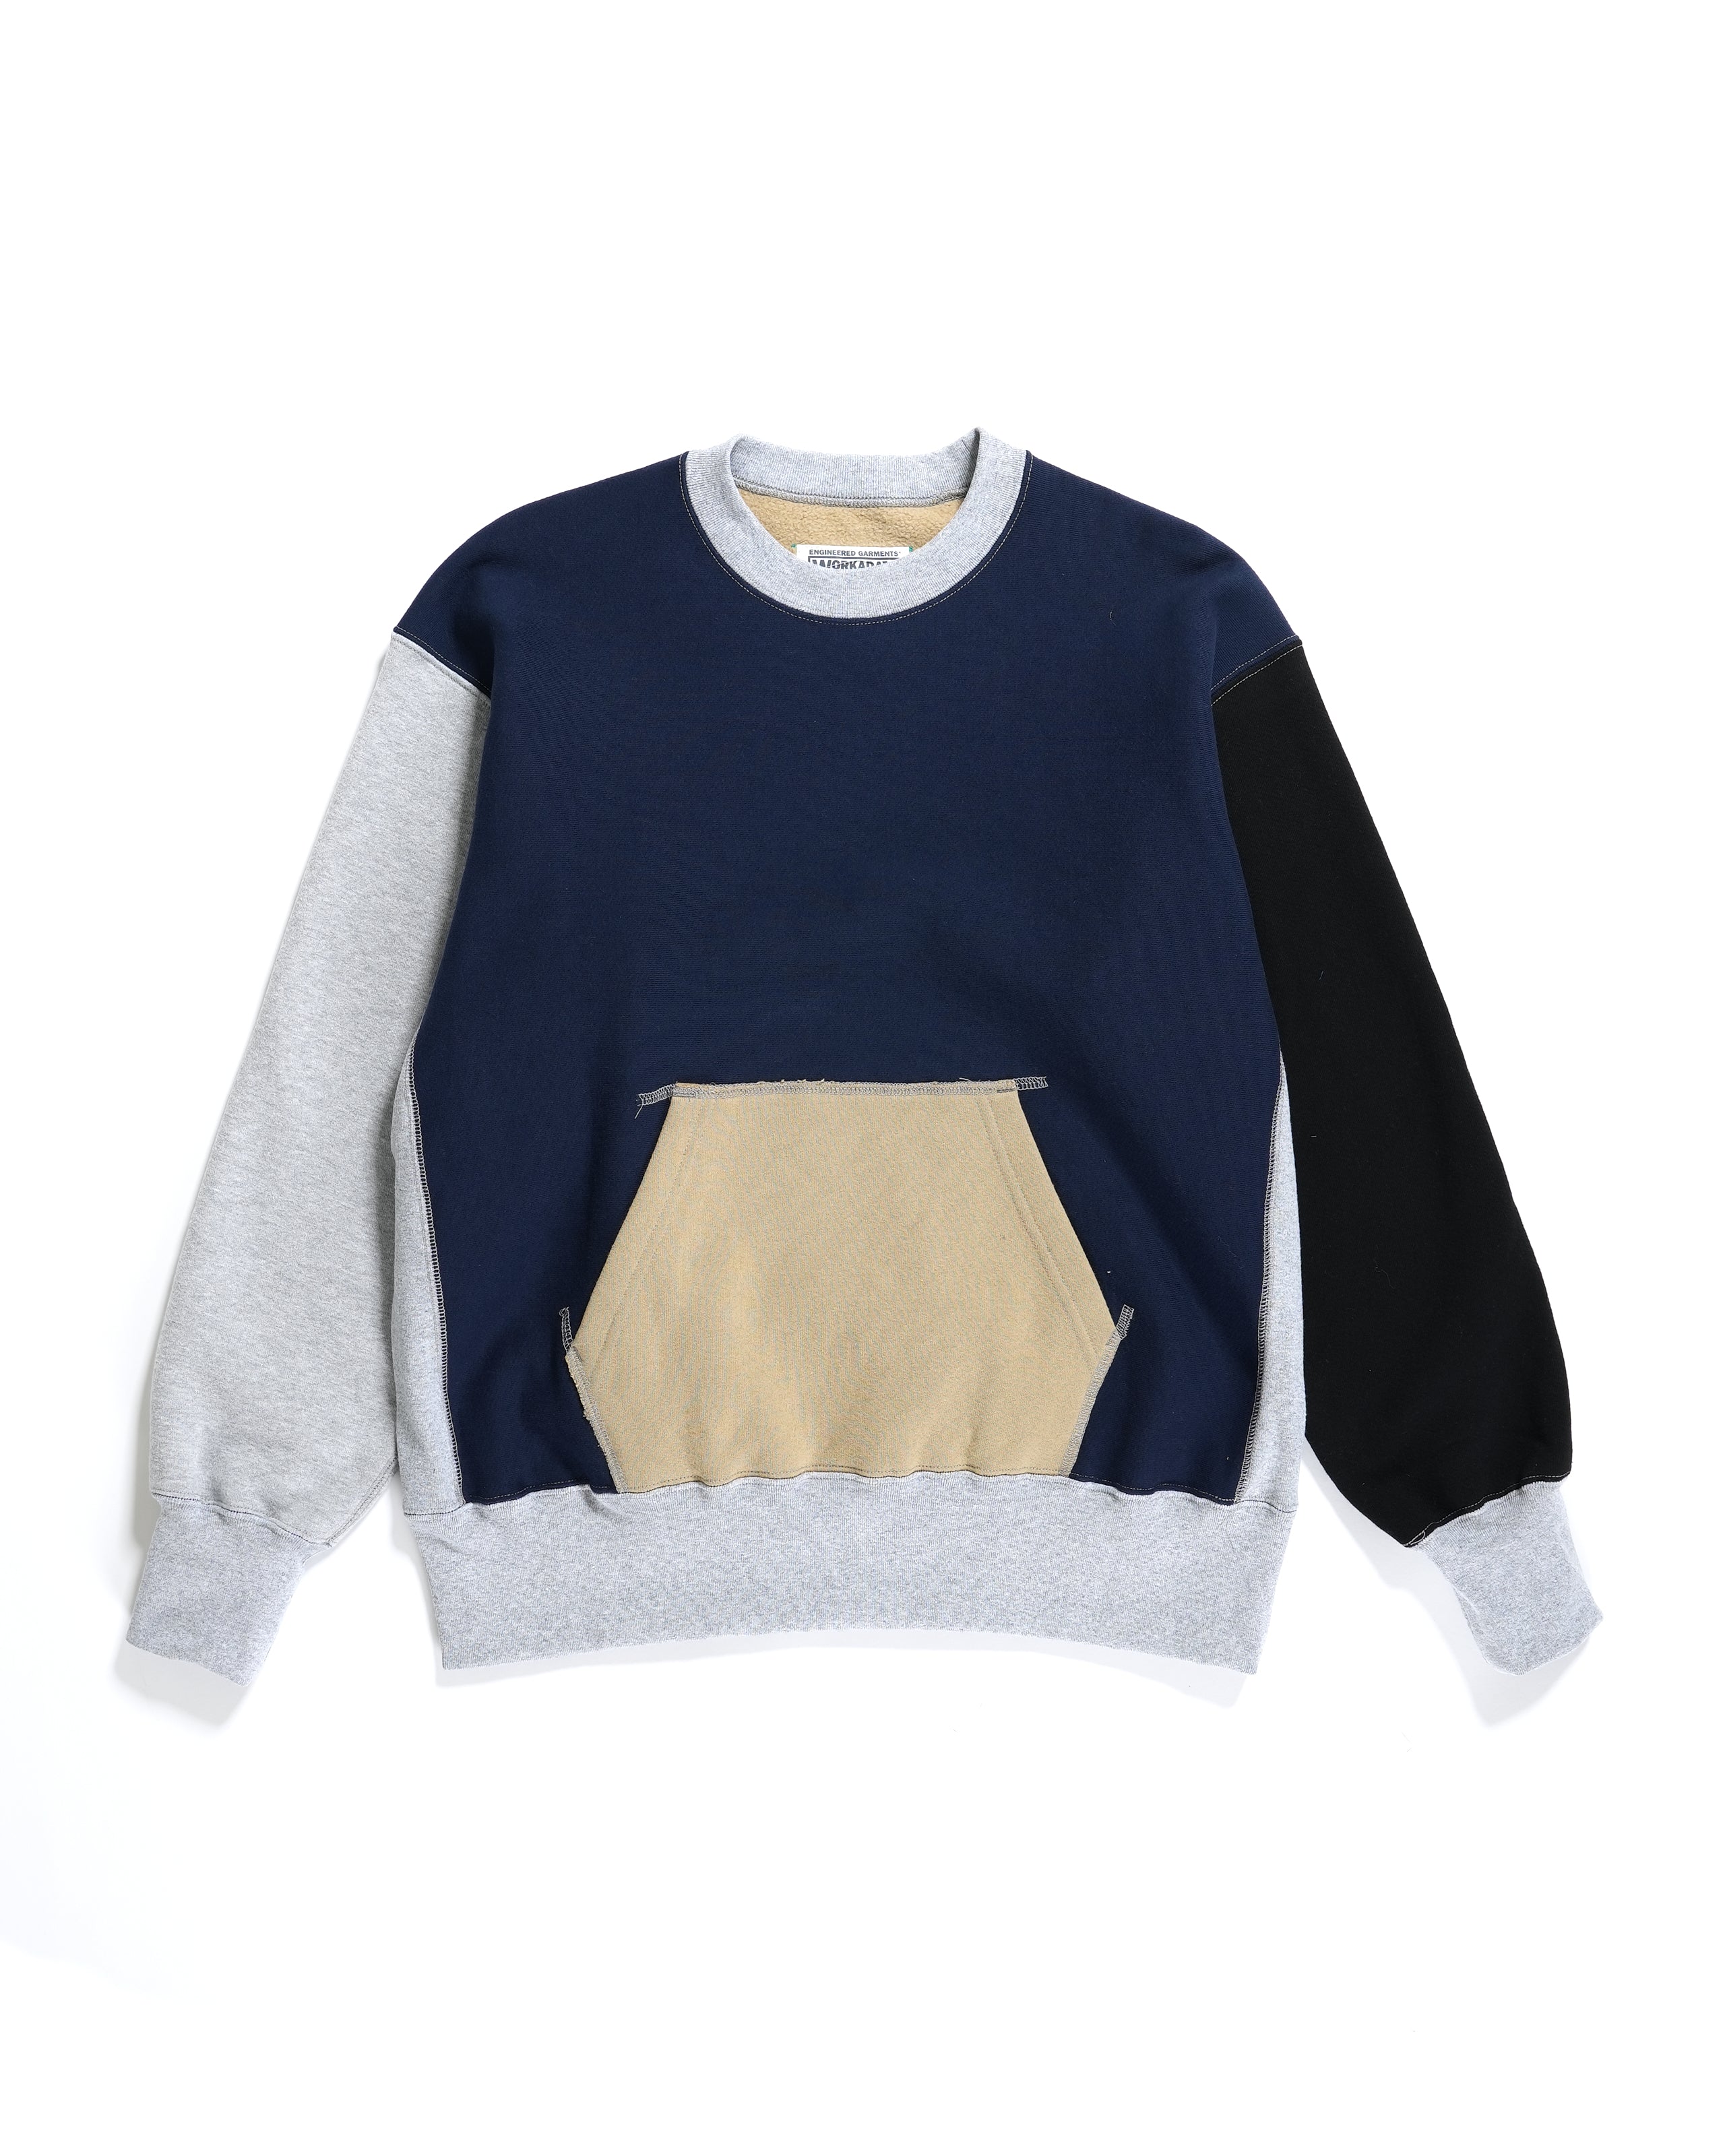 Combo Utility Sweatshirt - Khaki 12oz Cotton Fleece